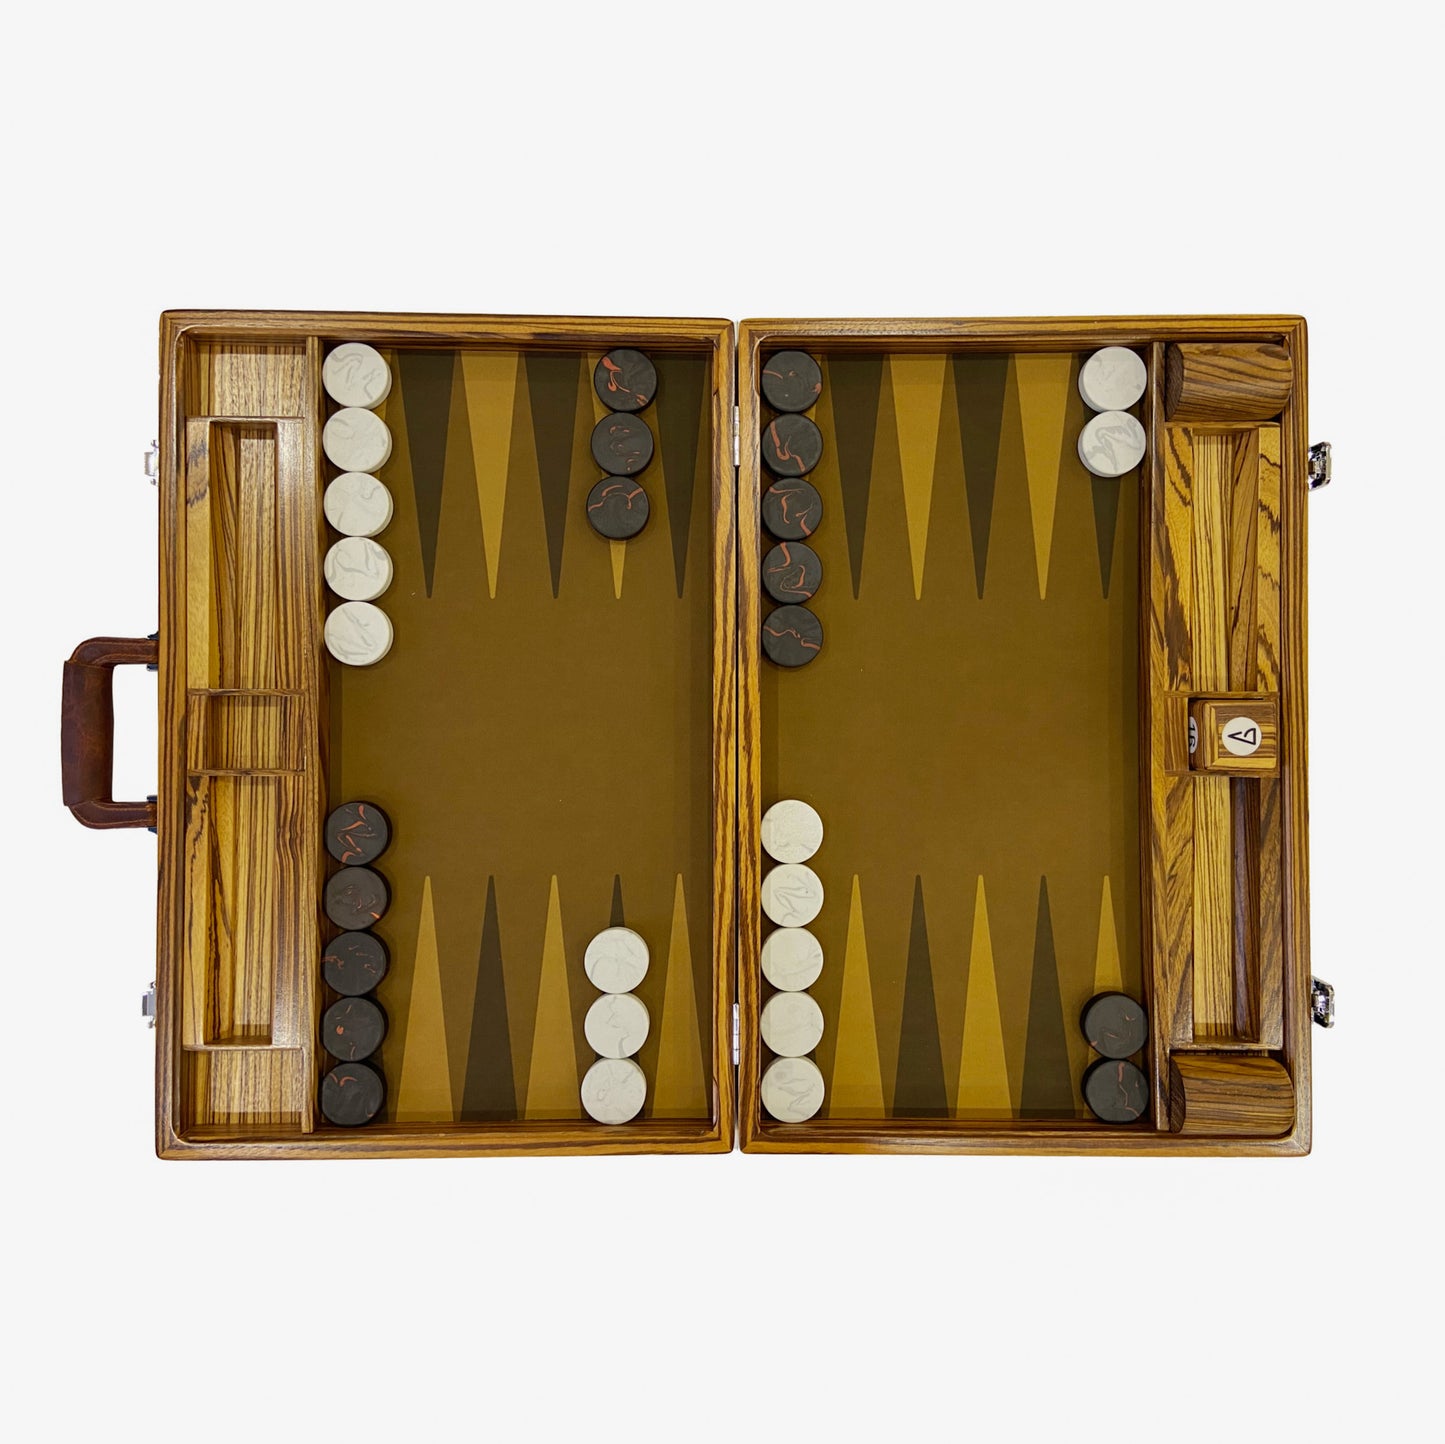 Das Primal Board, Luxus-Backgammon-Set, limitierte Auflage